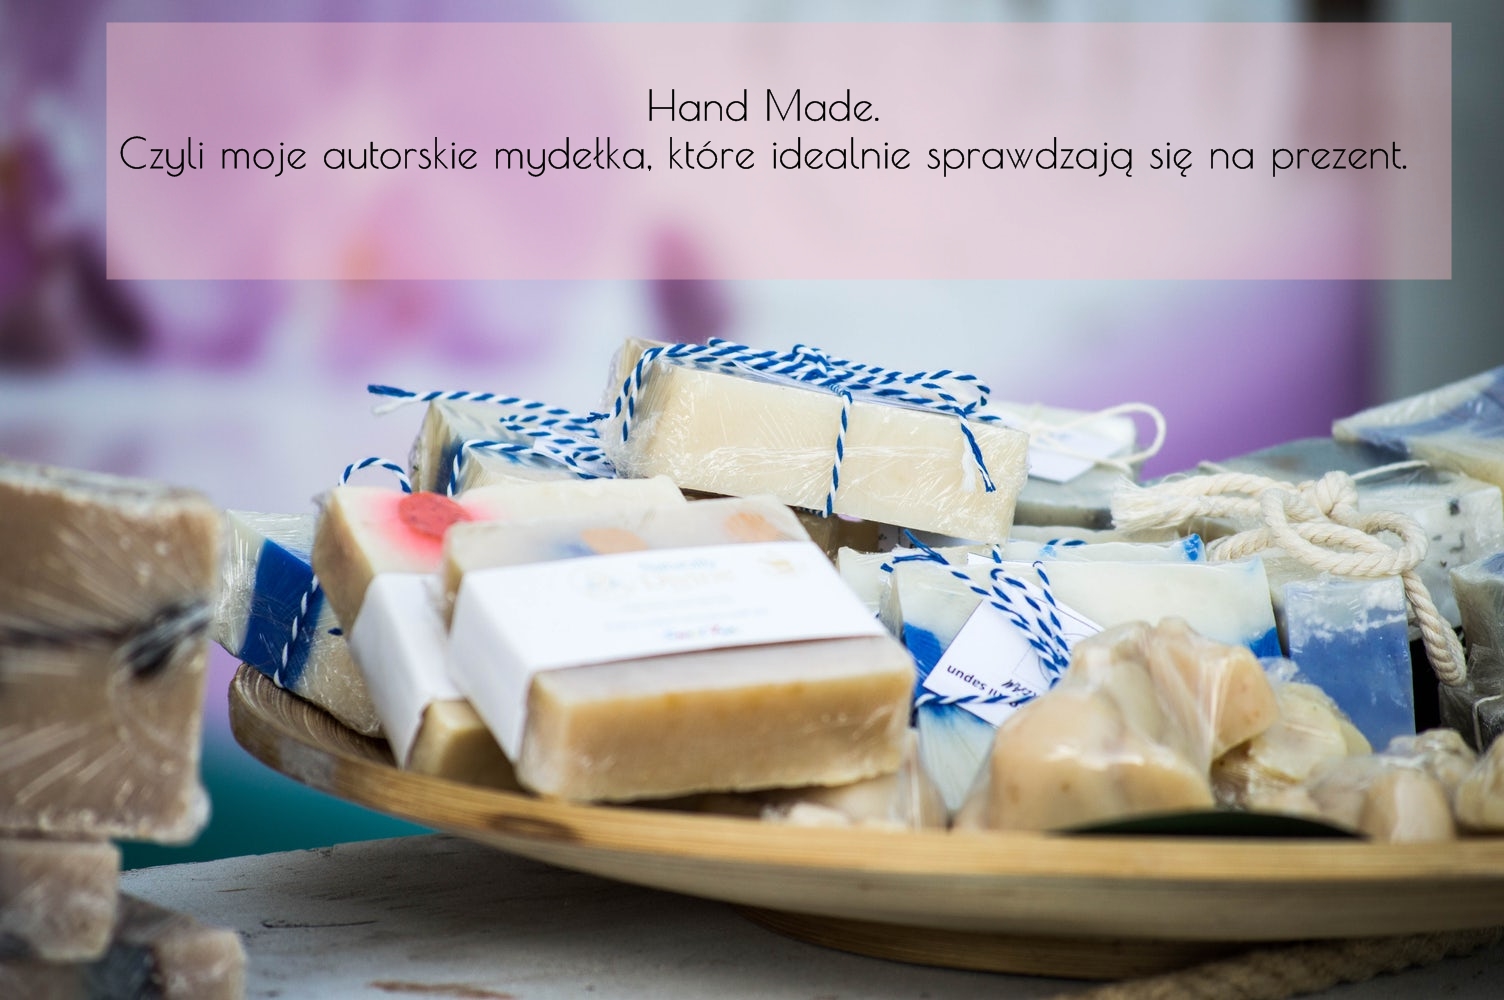 Dorota Pisze.pl: Hand Made. Czyli moje autorskie mydełka, które idealnie sprawdzają się na prezent.